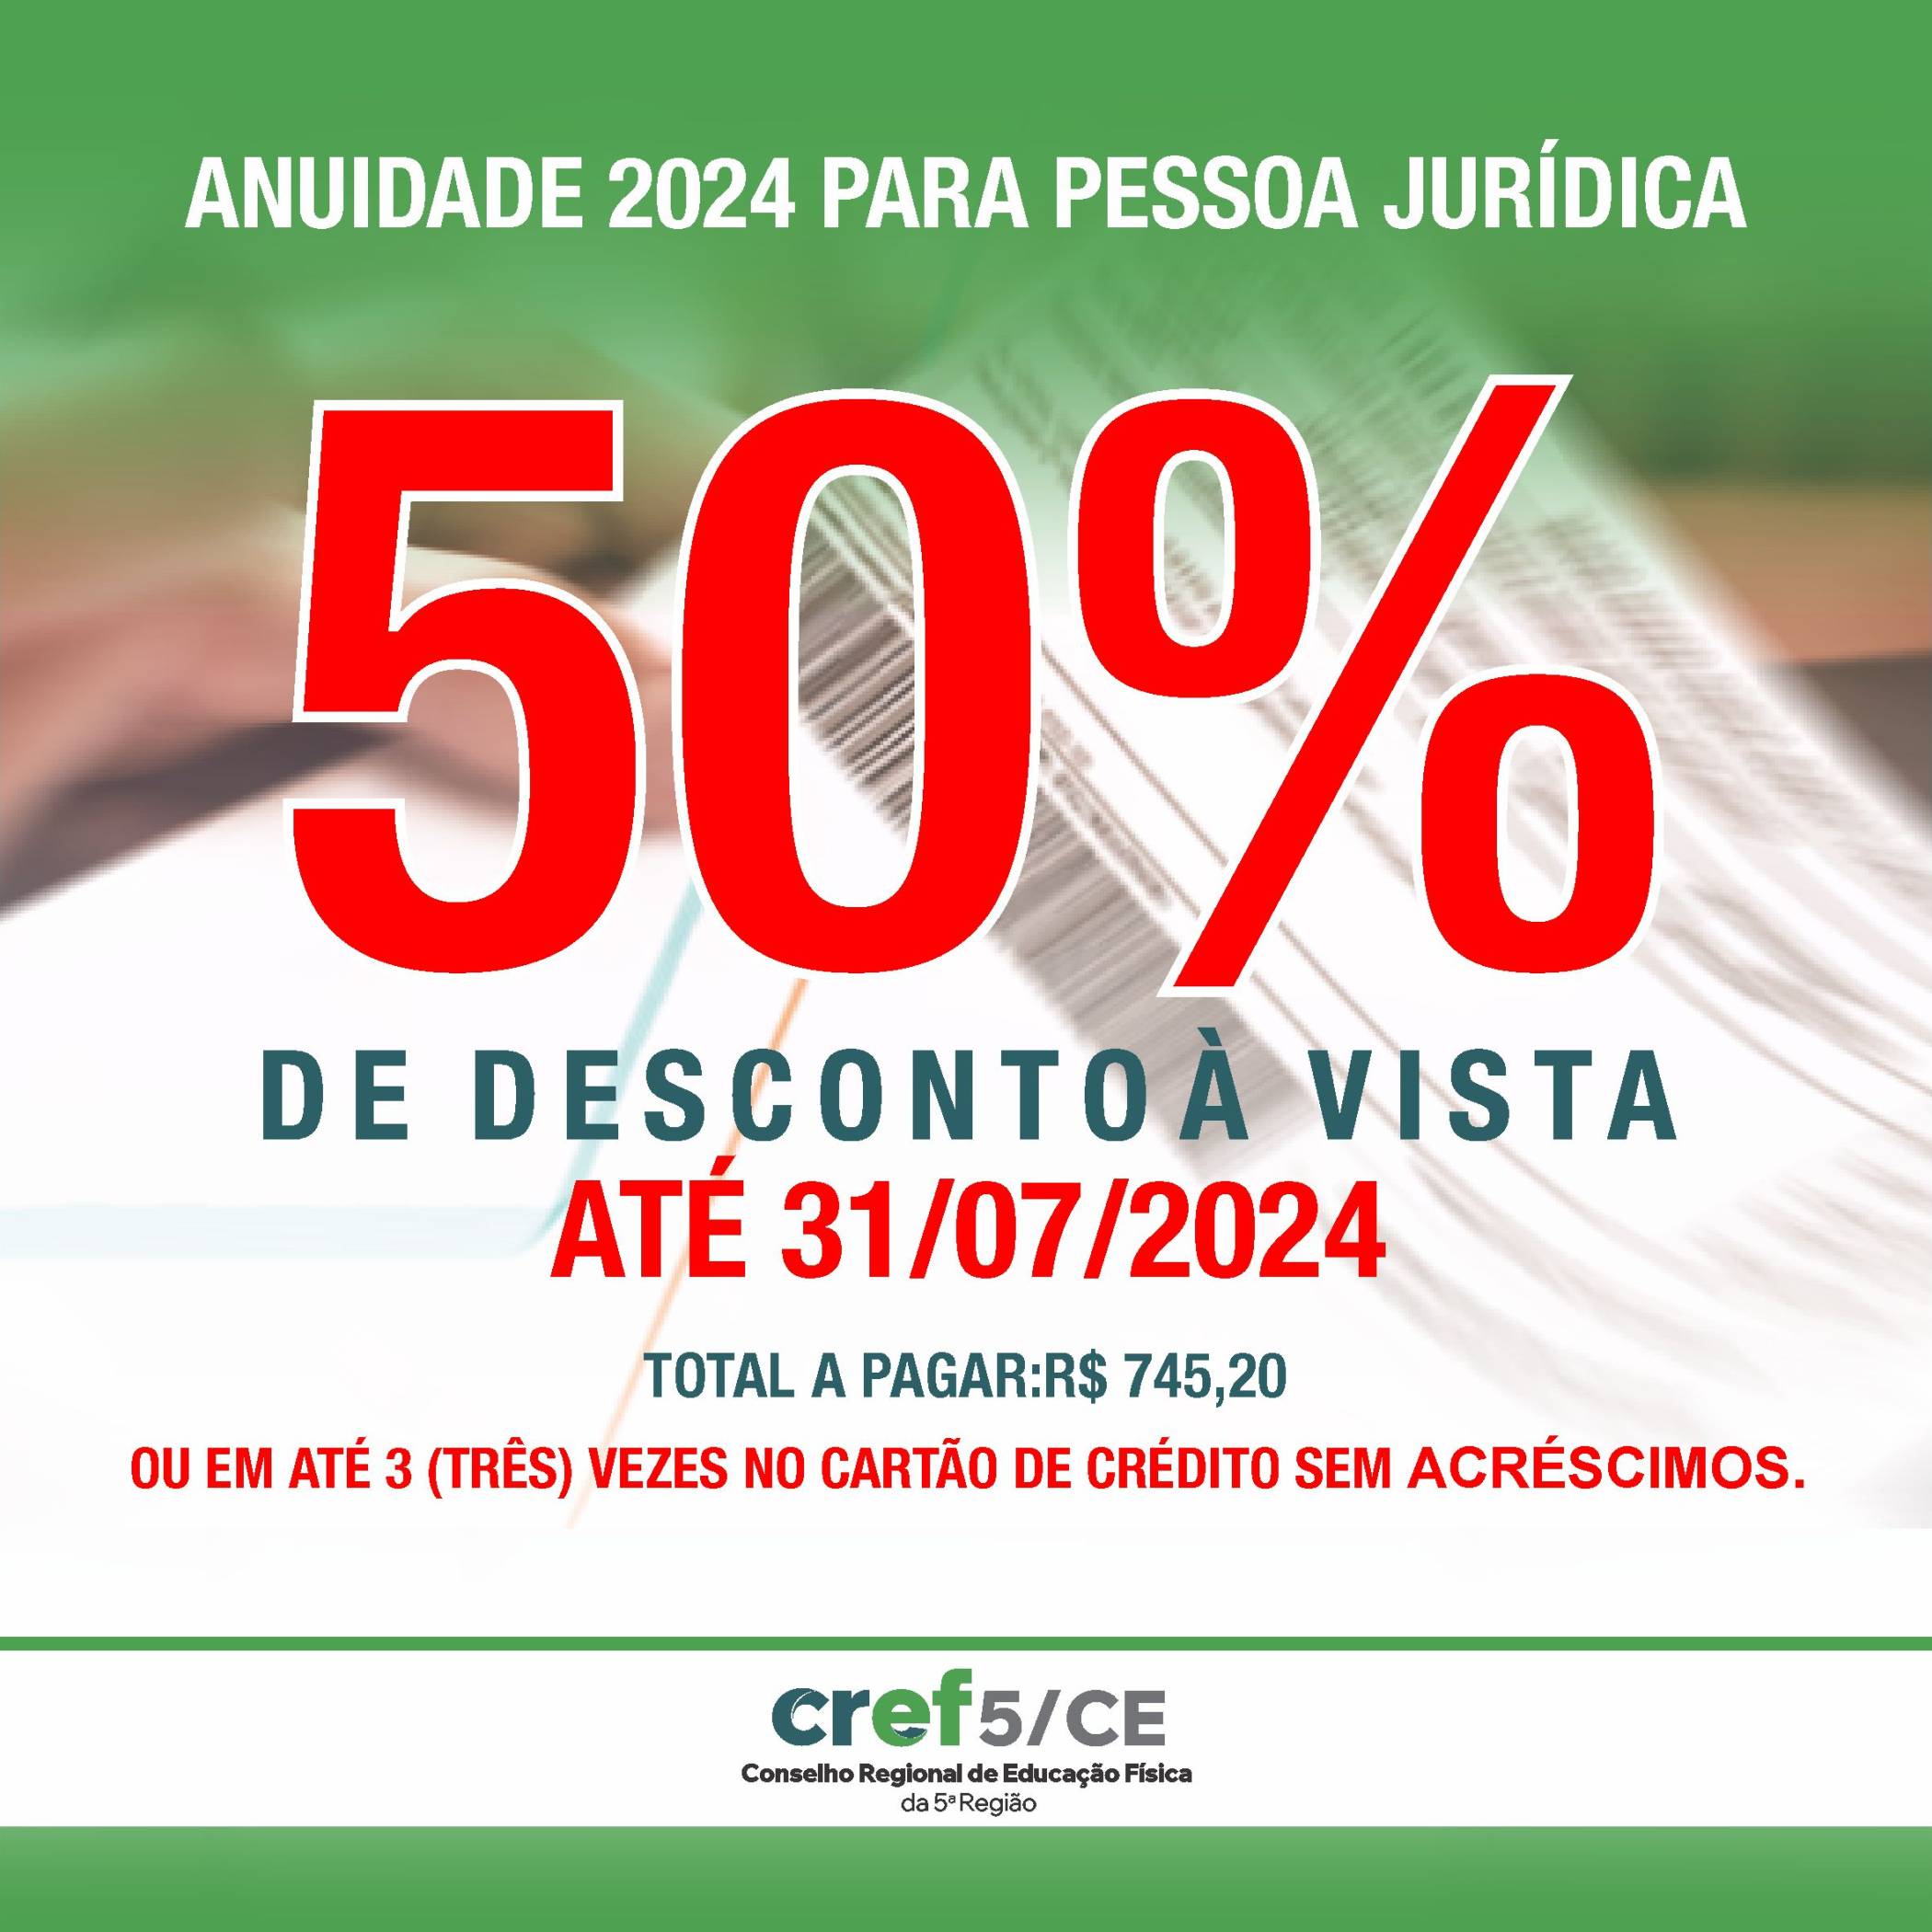 ANUIDADE PESSOA JURÍDICA 2024 DISPONÍVEL PARA PAGAMENTO COM 50% DE DESCONTO